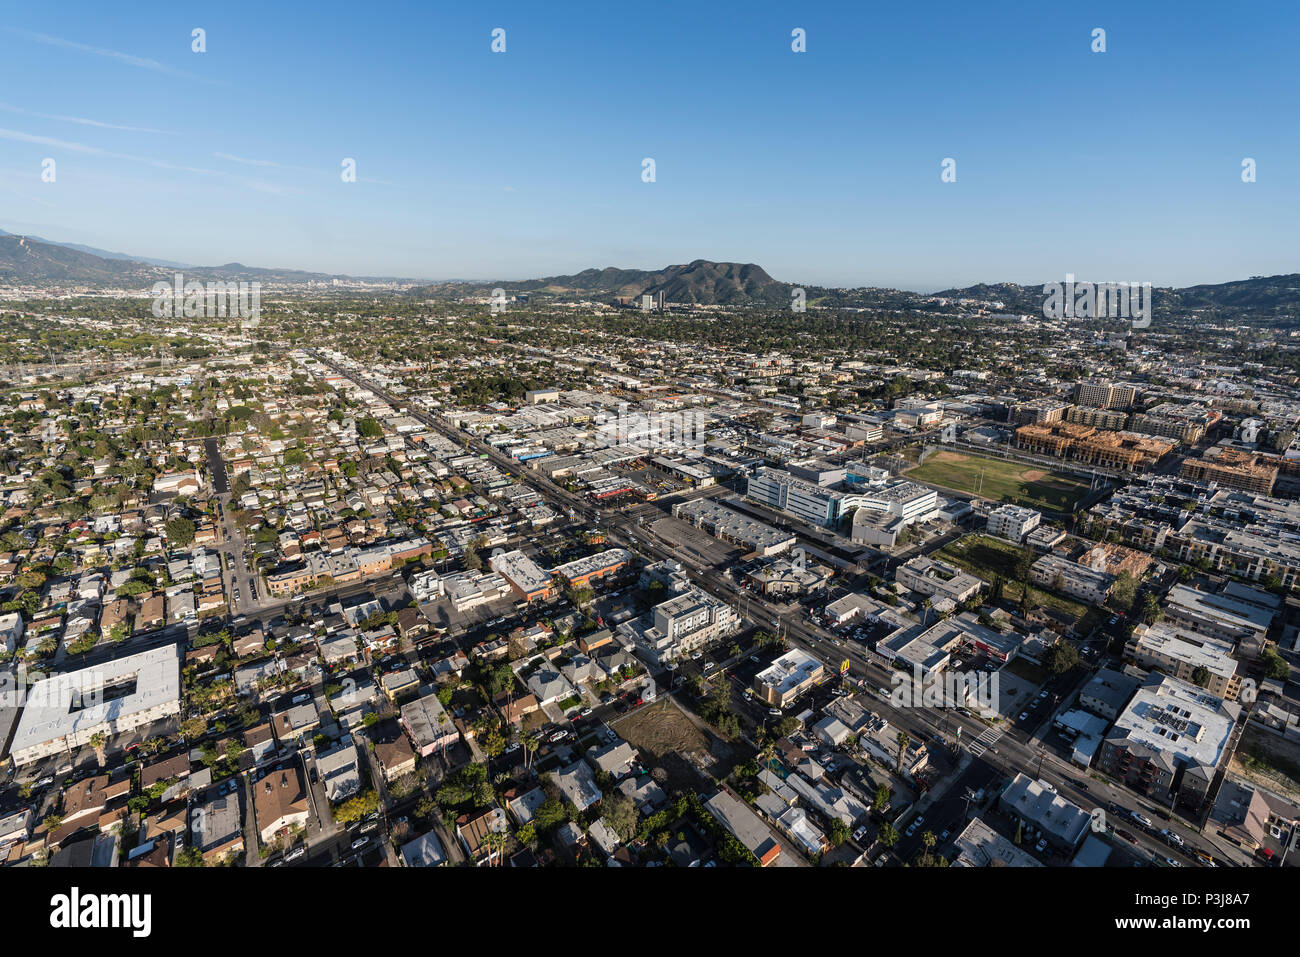 Los Angeles, Californie, USA - 18 Avril 2018 : Vue aérienne de Burbank Blvd et le nord d'Hollywood dans le voisinage de la vallée de San Fernando. Banque D'Images